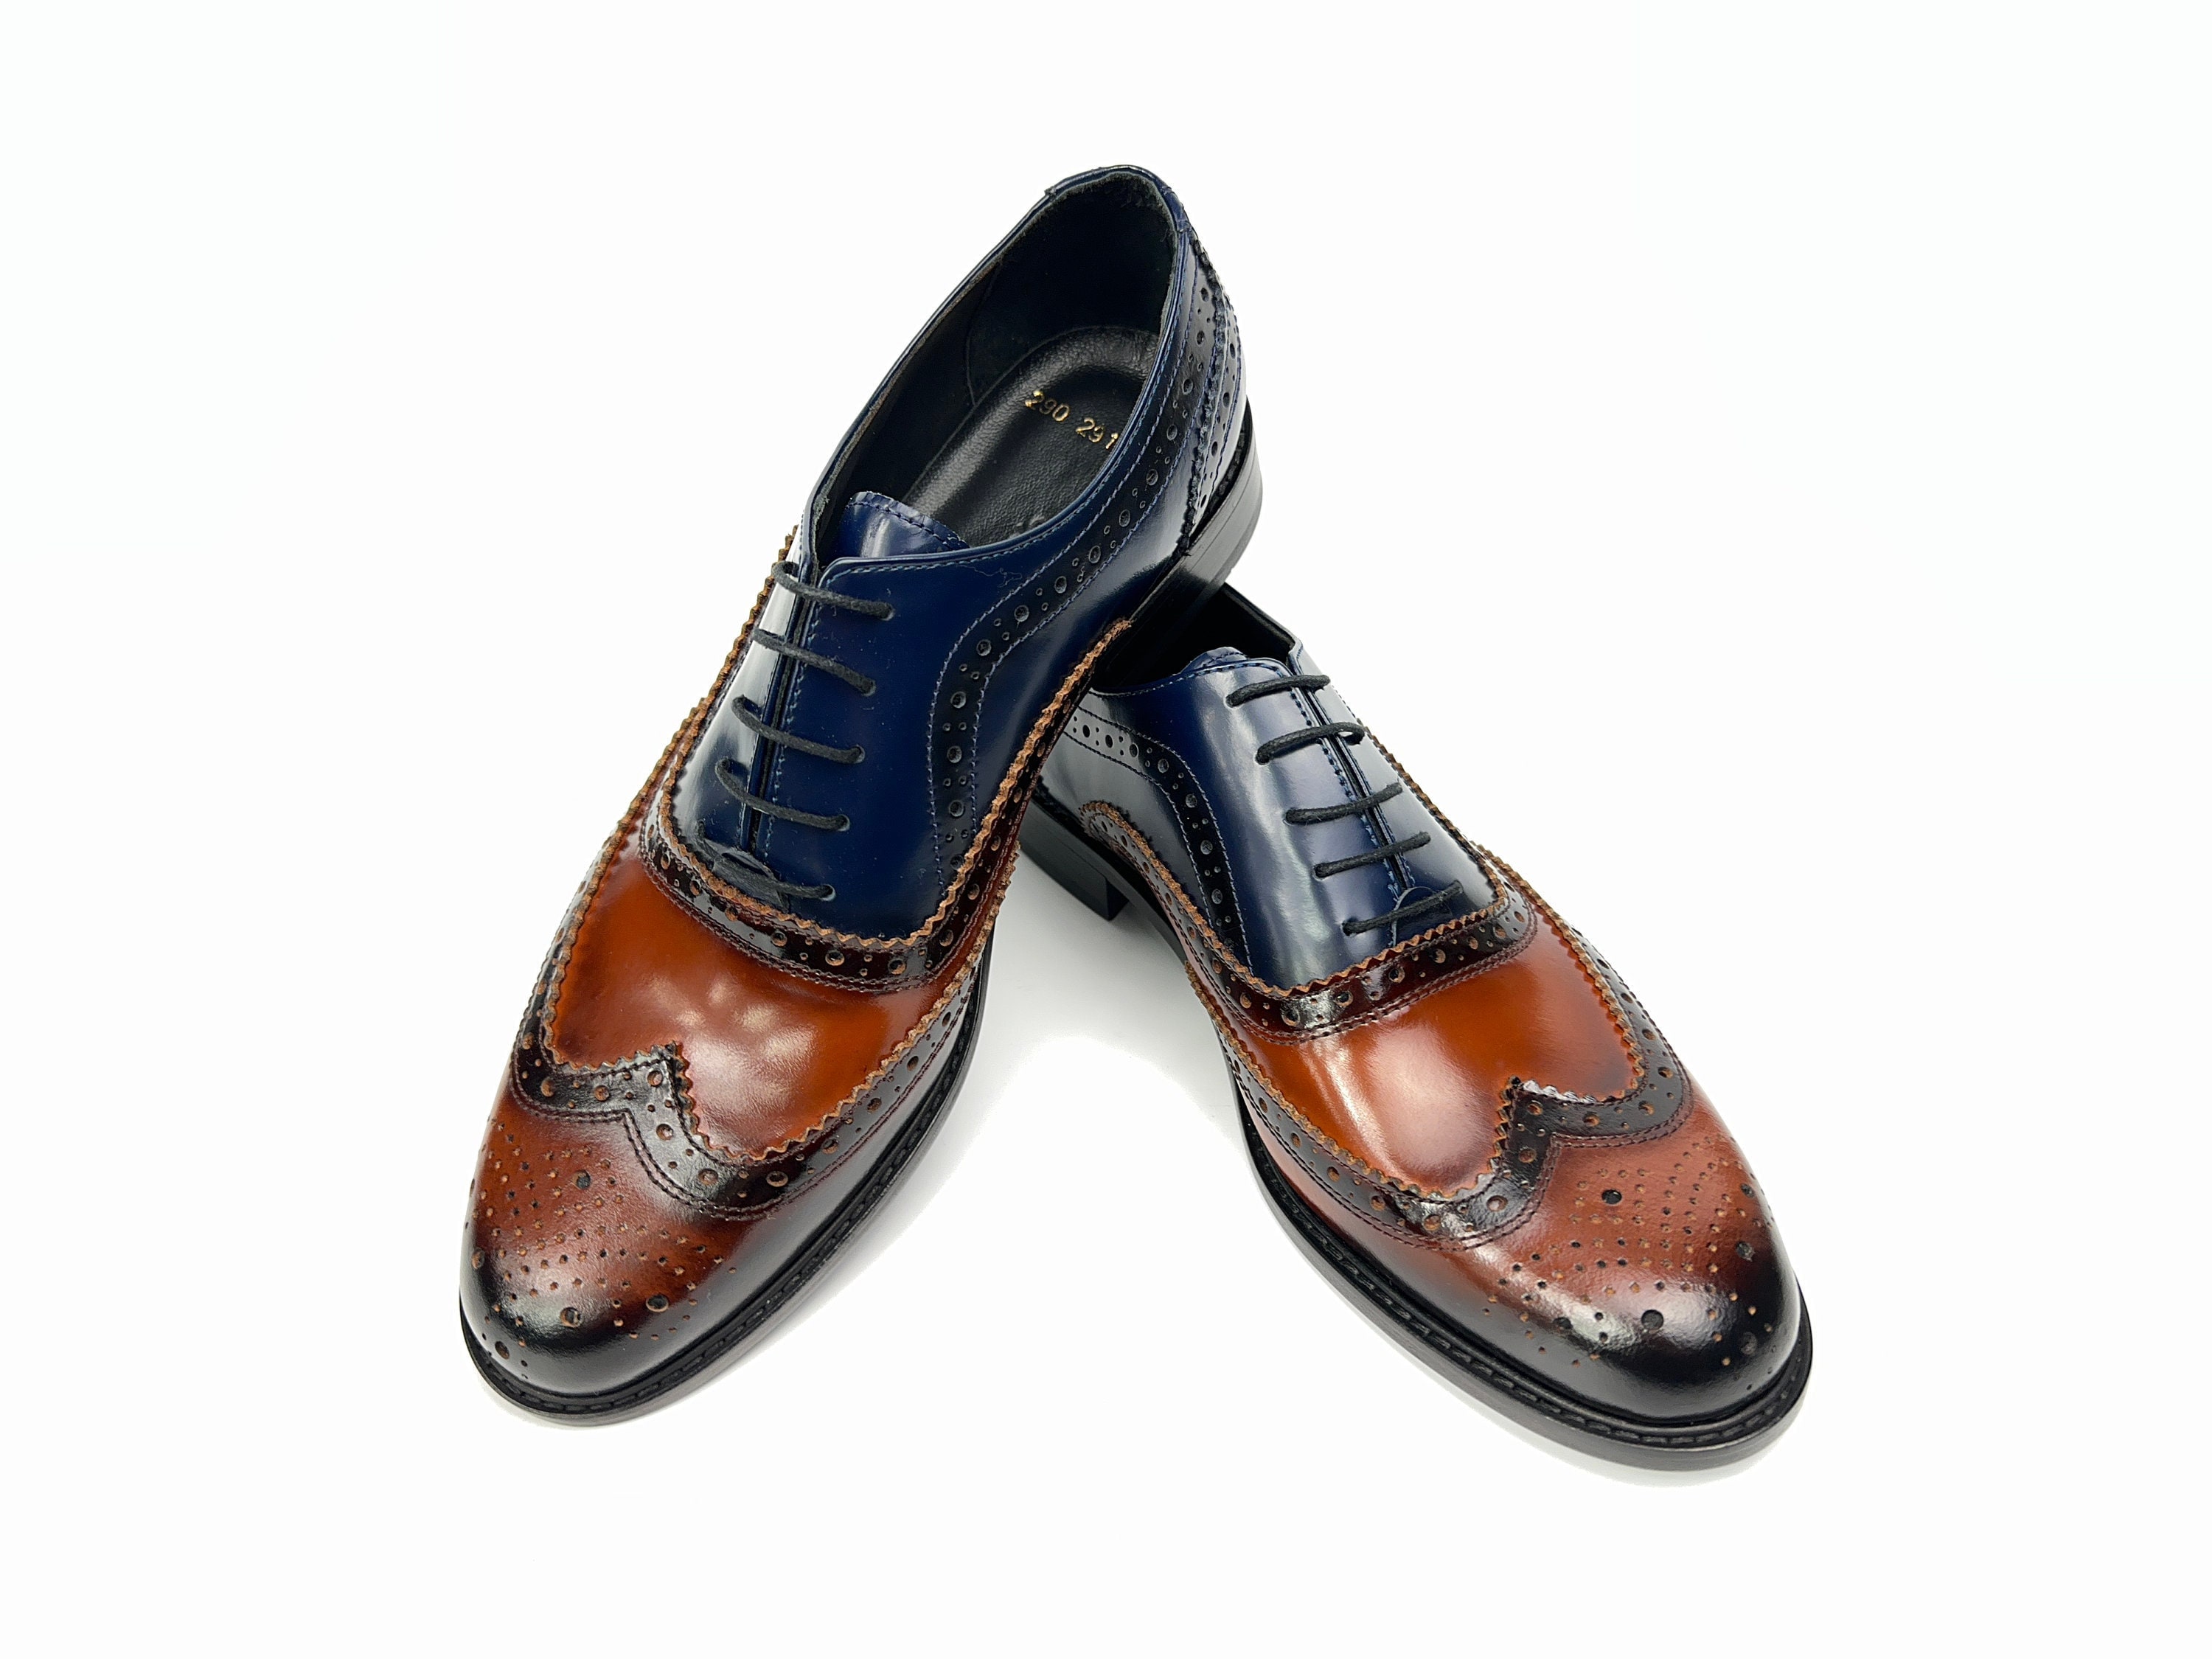 Il Rosso Men's Wingtip Oxford Shoes